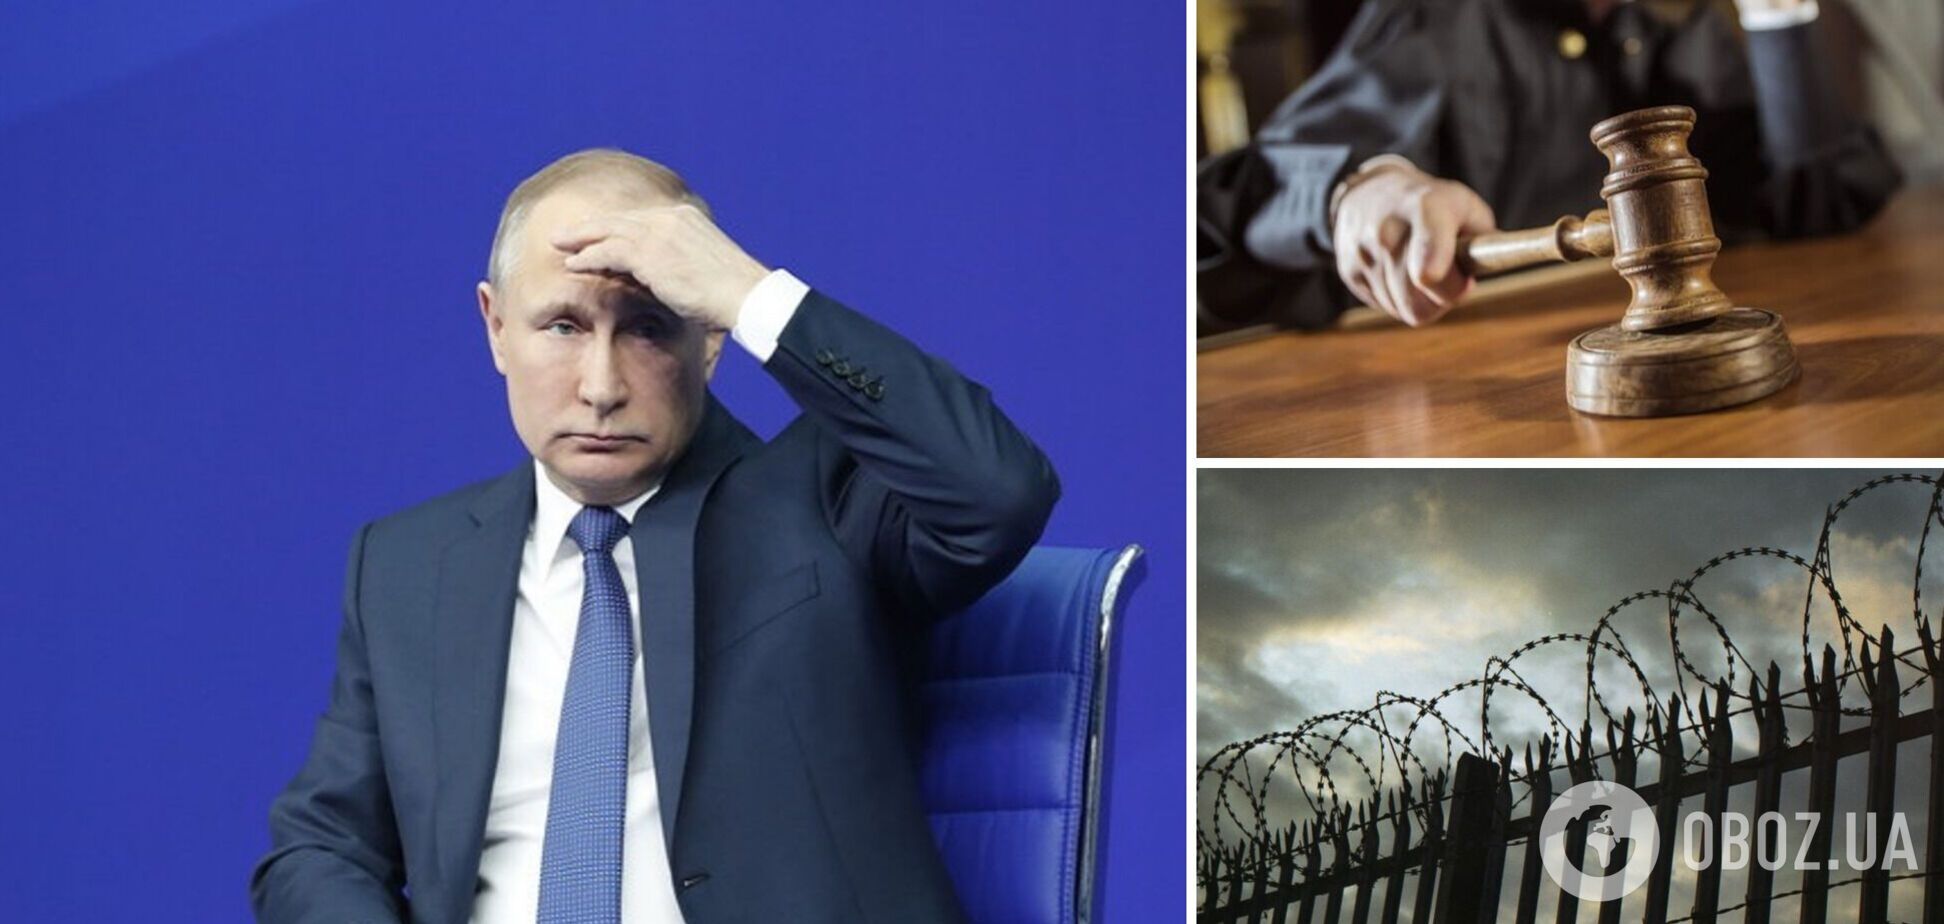 Трибунал ждет: The Times карикатурой потроллила Путина и намекнула на расплату